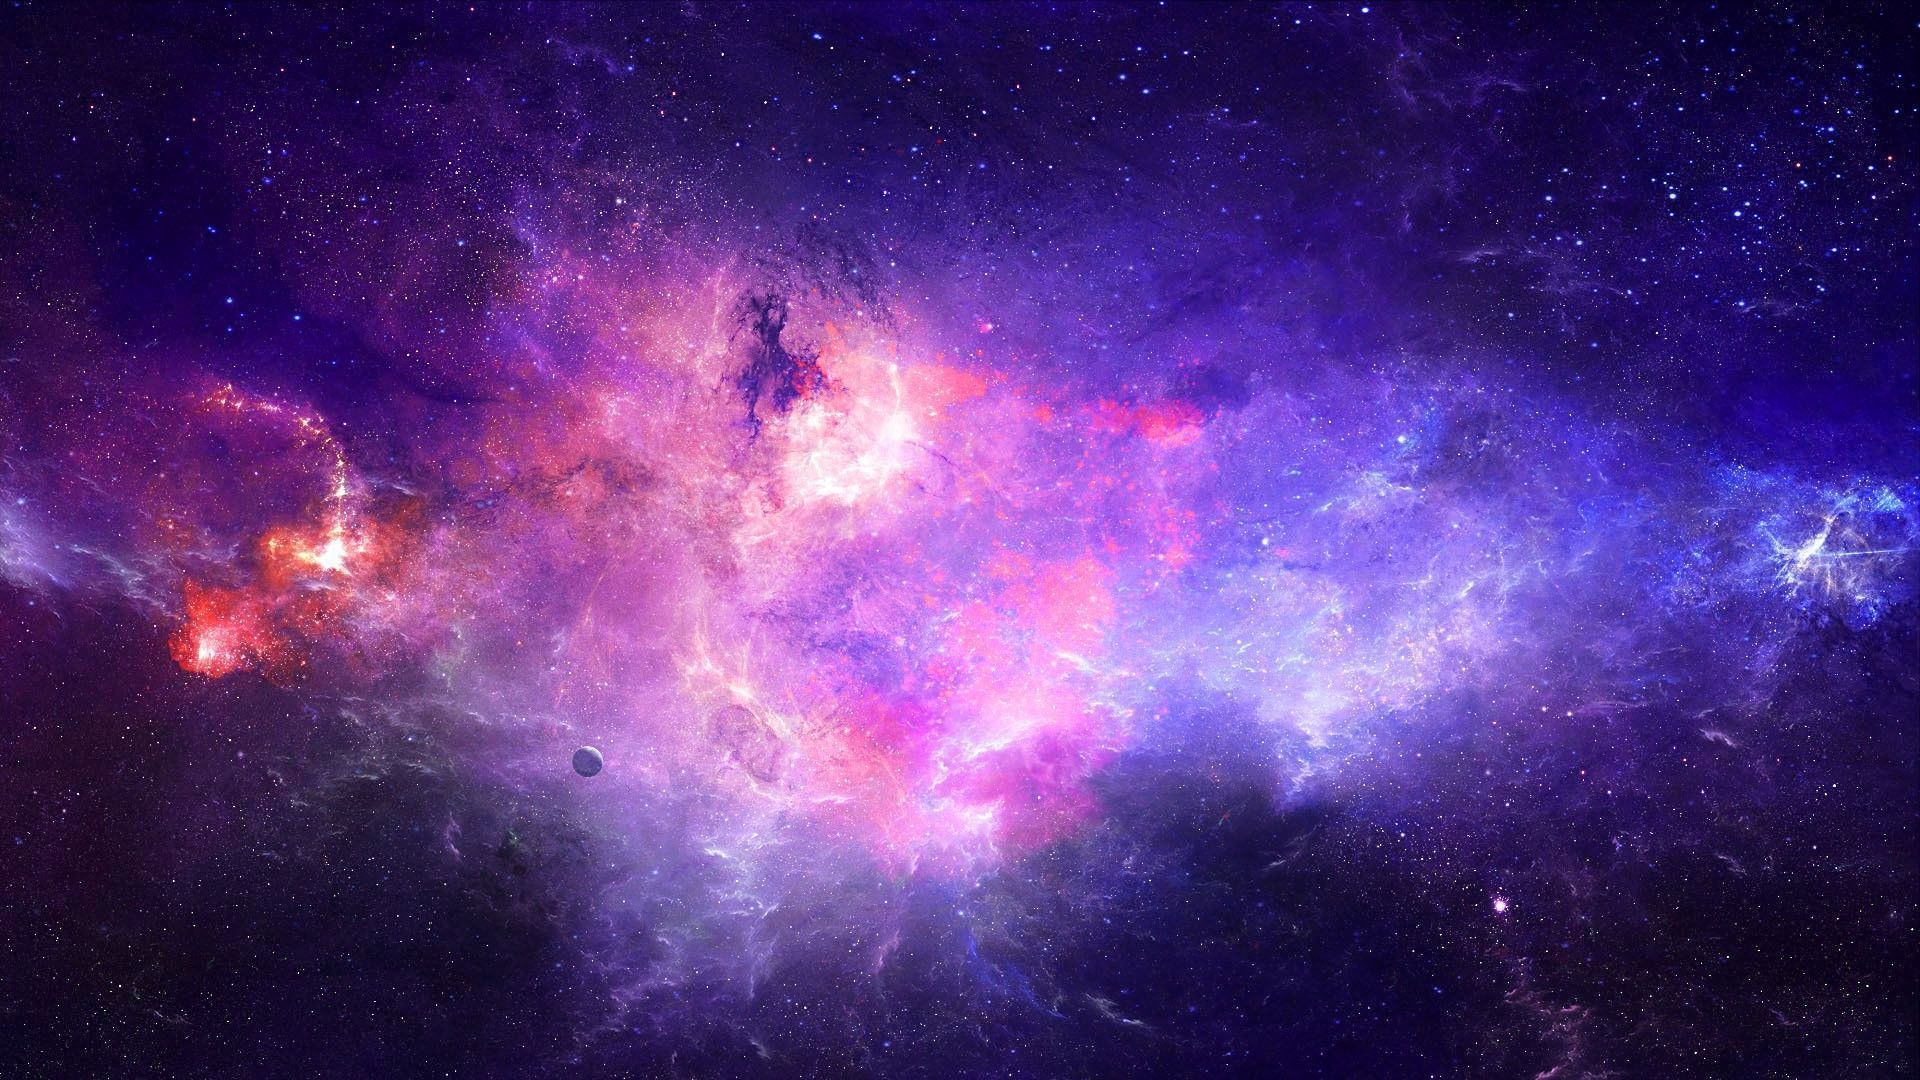 Bạn muốn có hình nền động vật thiên hà màu tím miễn phí? Hãy truy cập ngay vào trang WallpaperDog để tìm kiếm những bức tranh đẹp nhất và tải về máy tính, điện thoại ngay thôi!